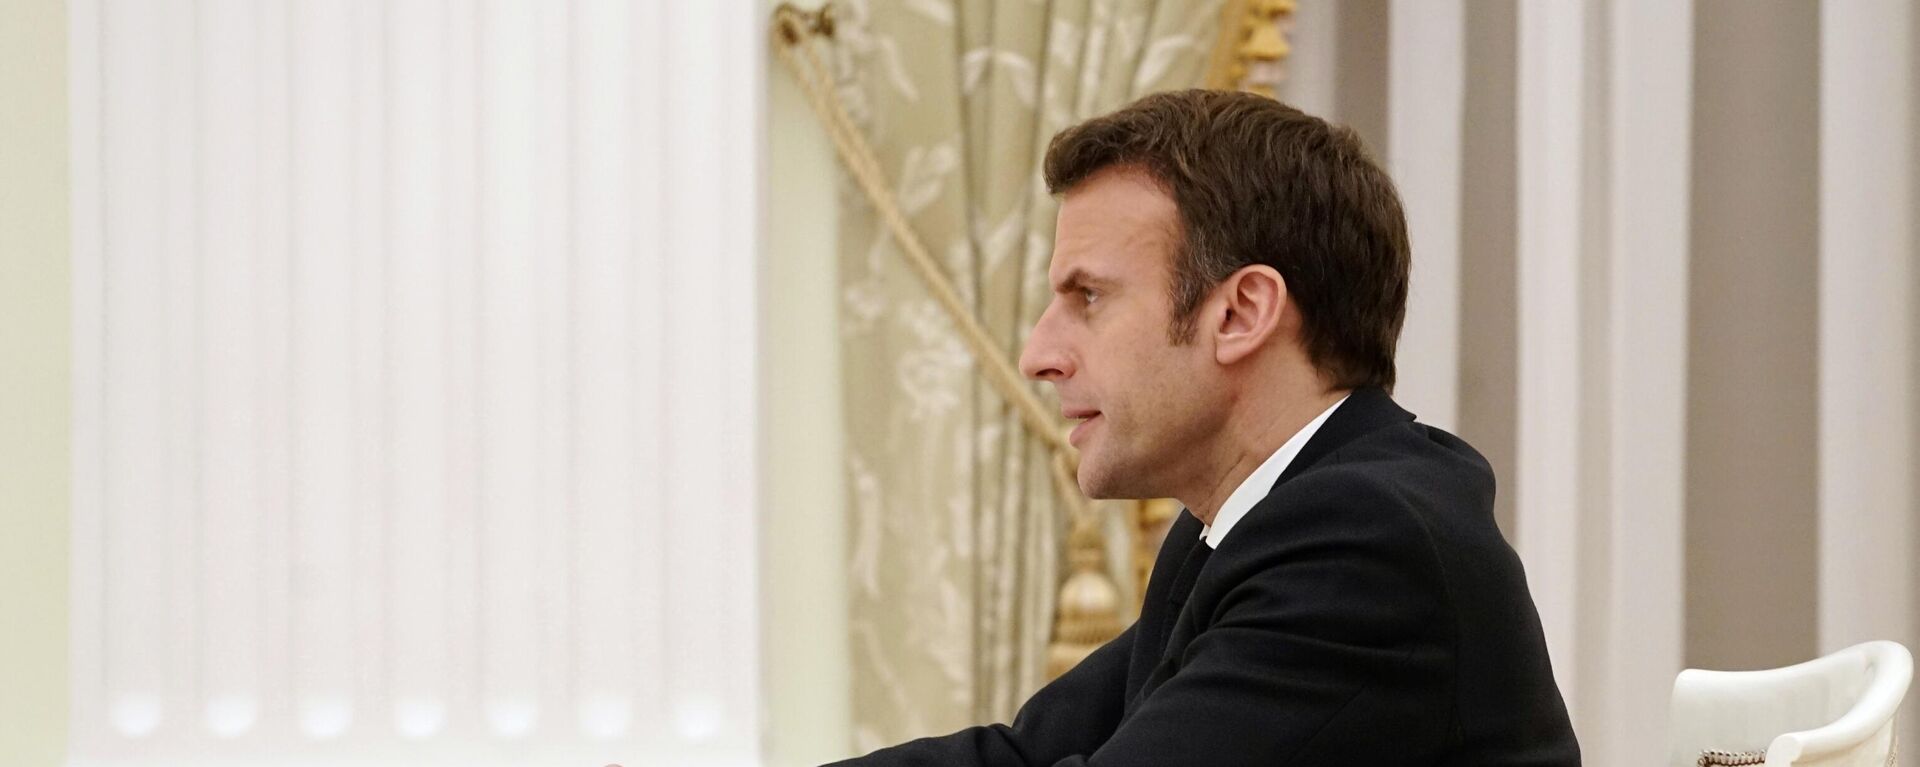 Emmanuel Macron lors de son entretien avec Vladimir Poutine à Moscou, le 7 février 2022 - Sputnik Afrique, 1920, 08.02.2022